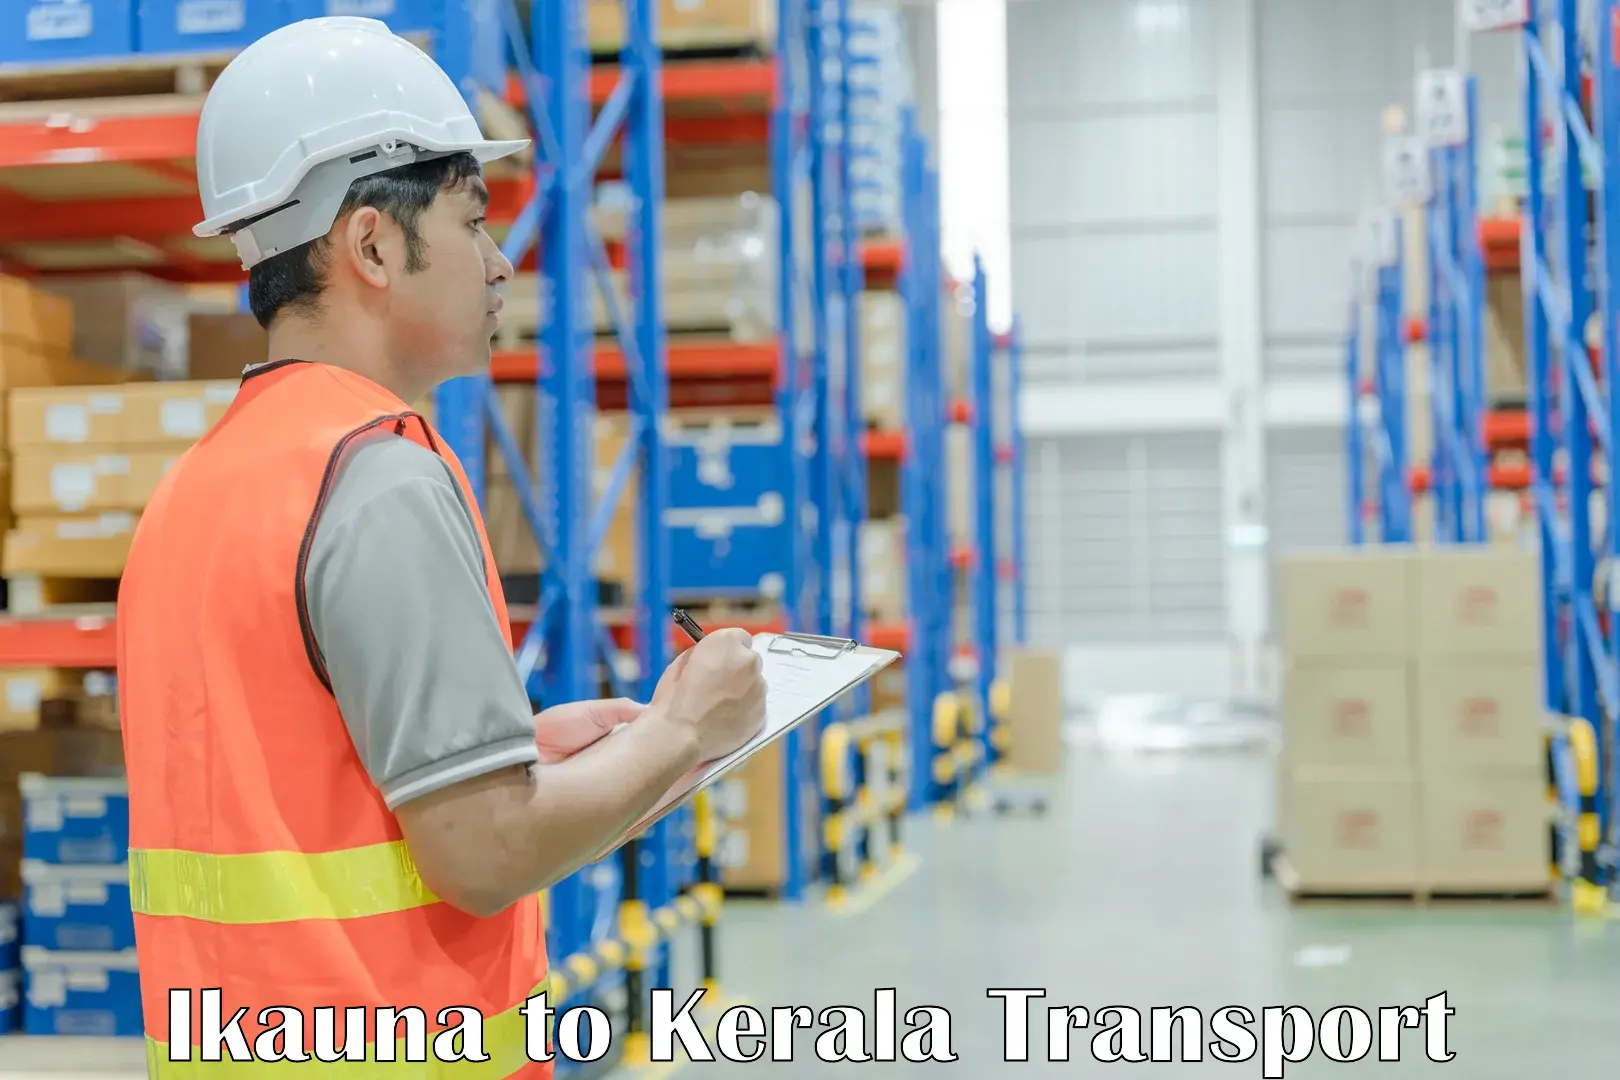 Commercial transport service Ikauna to Adoor